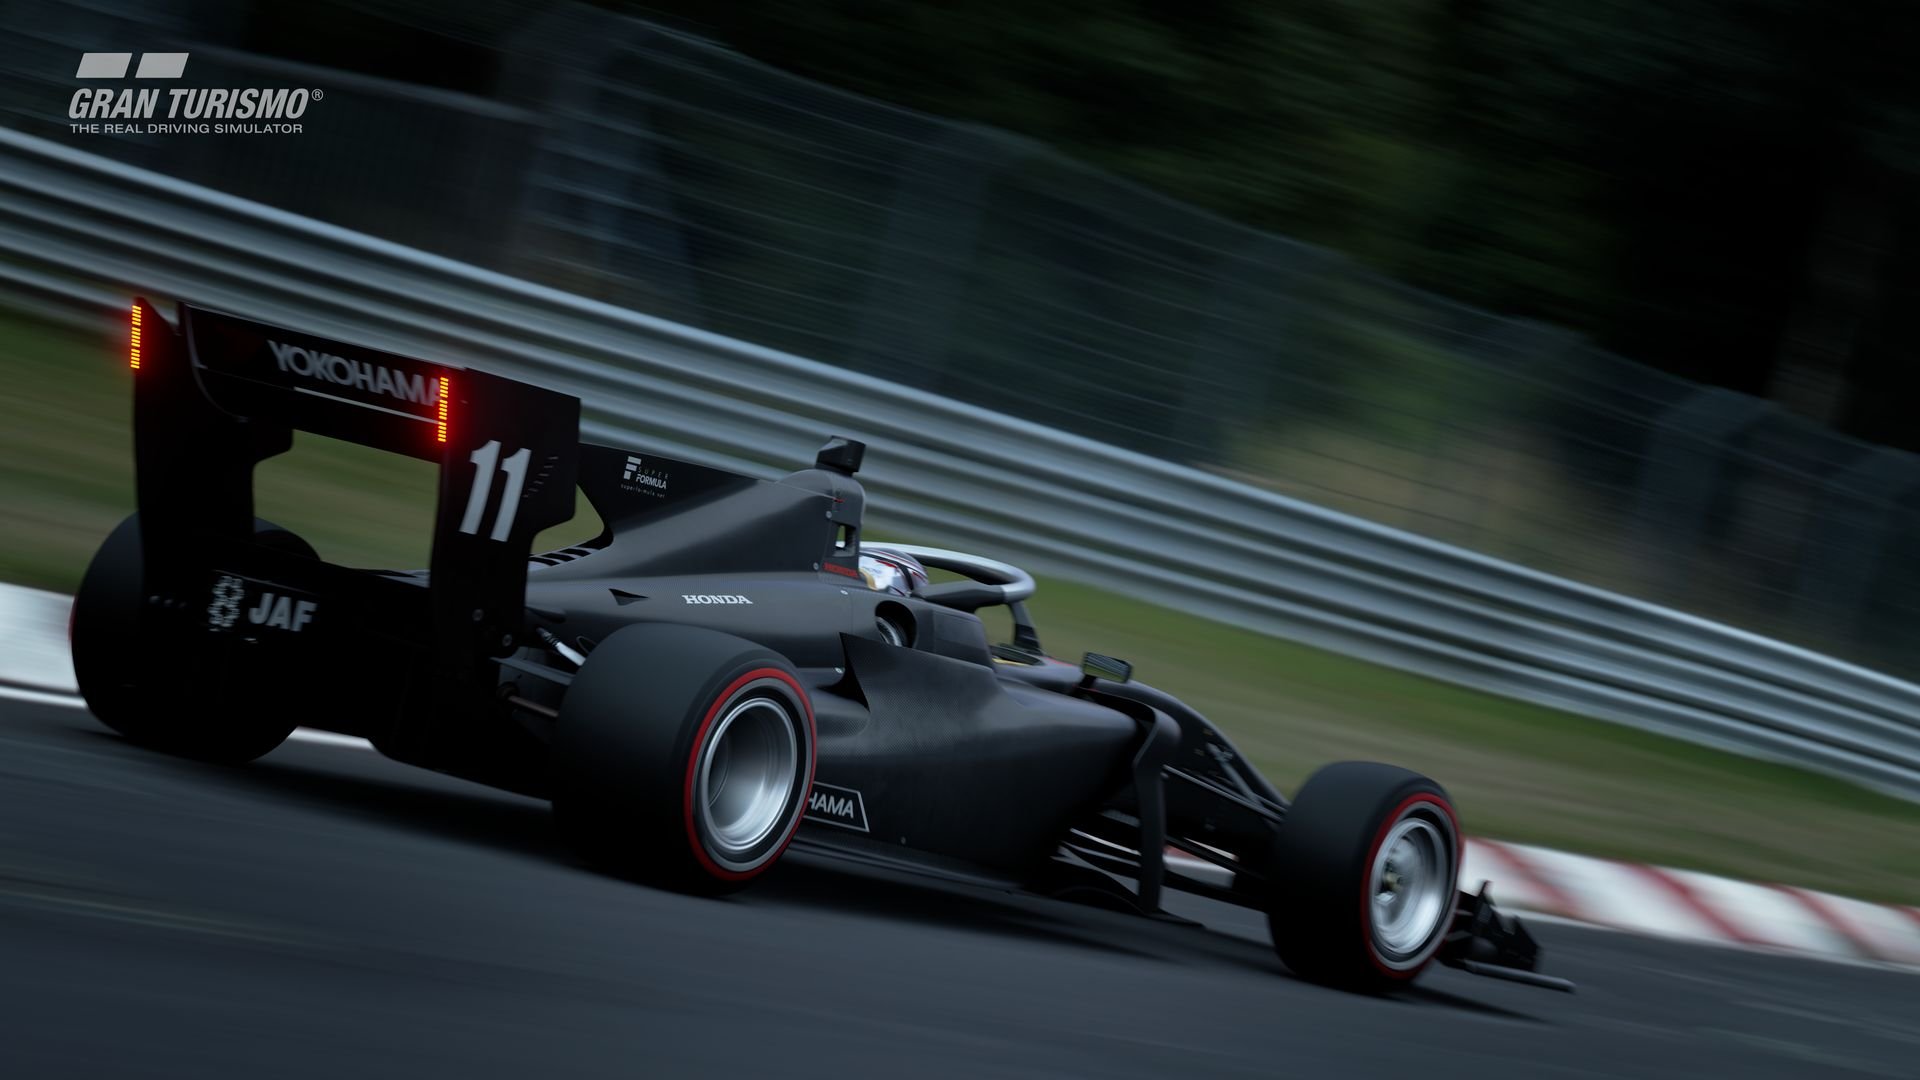 More information about "Gran Turismo Sport: nuovo update v1.36 con la Dallara Super Formula"